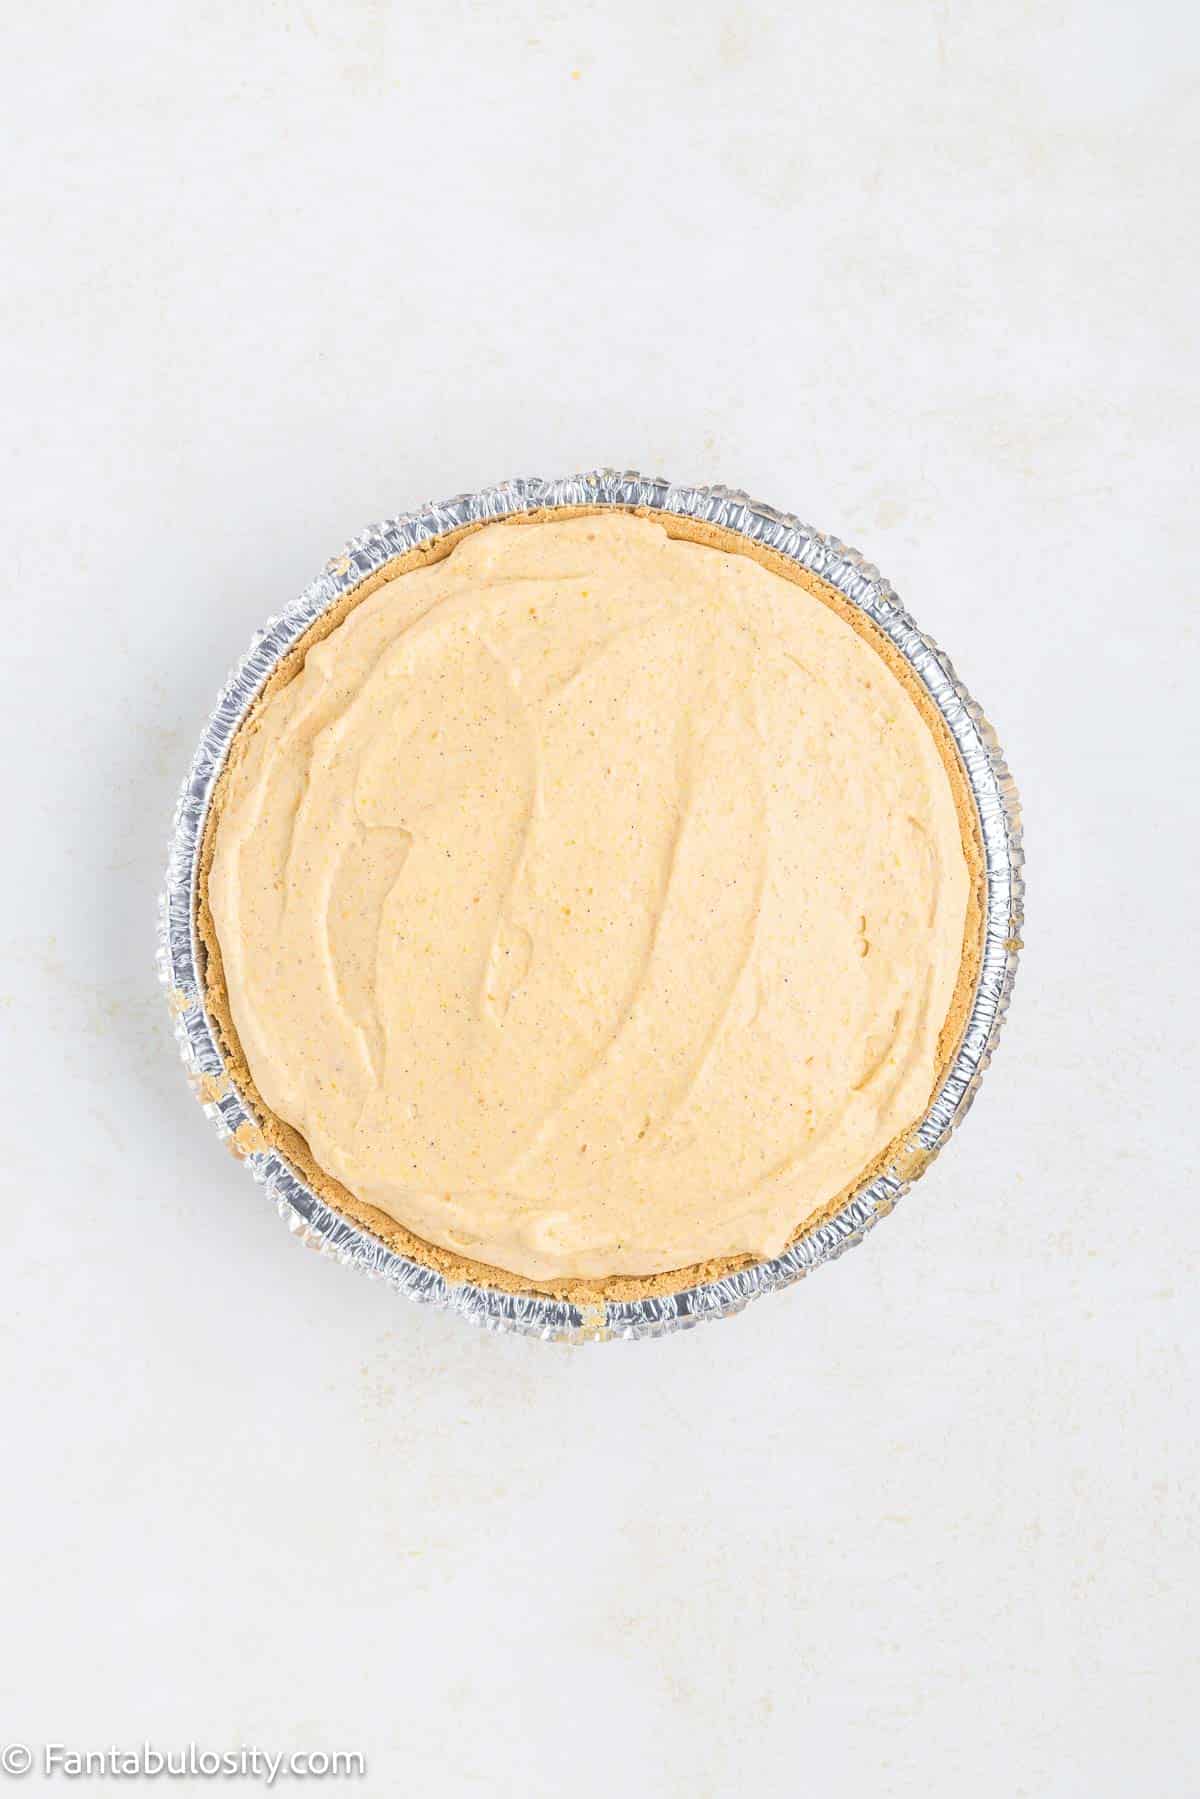 No bake pumpkin pie in graham cracker crust, sitting on kitchen counter.